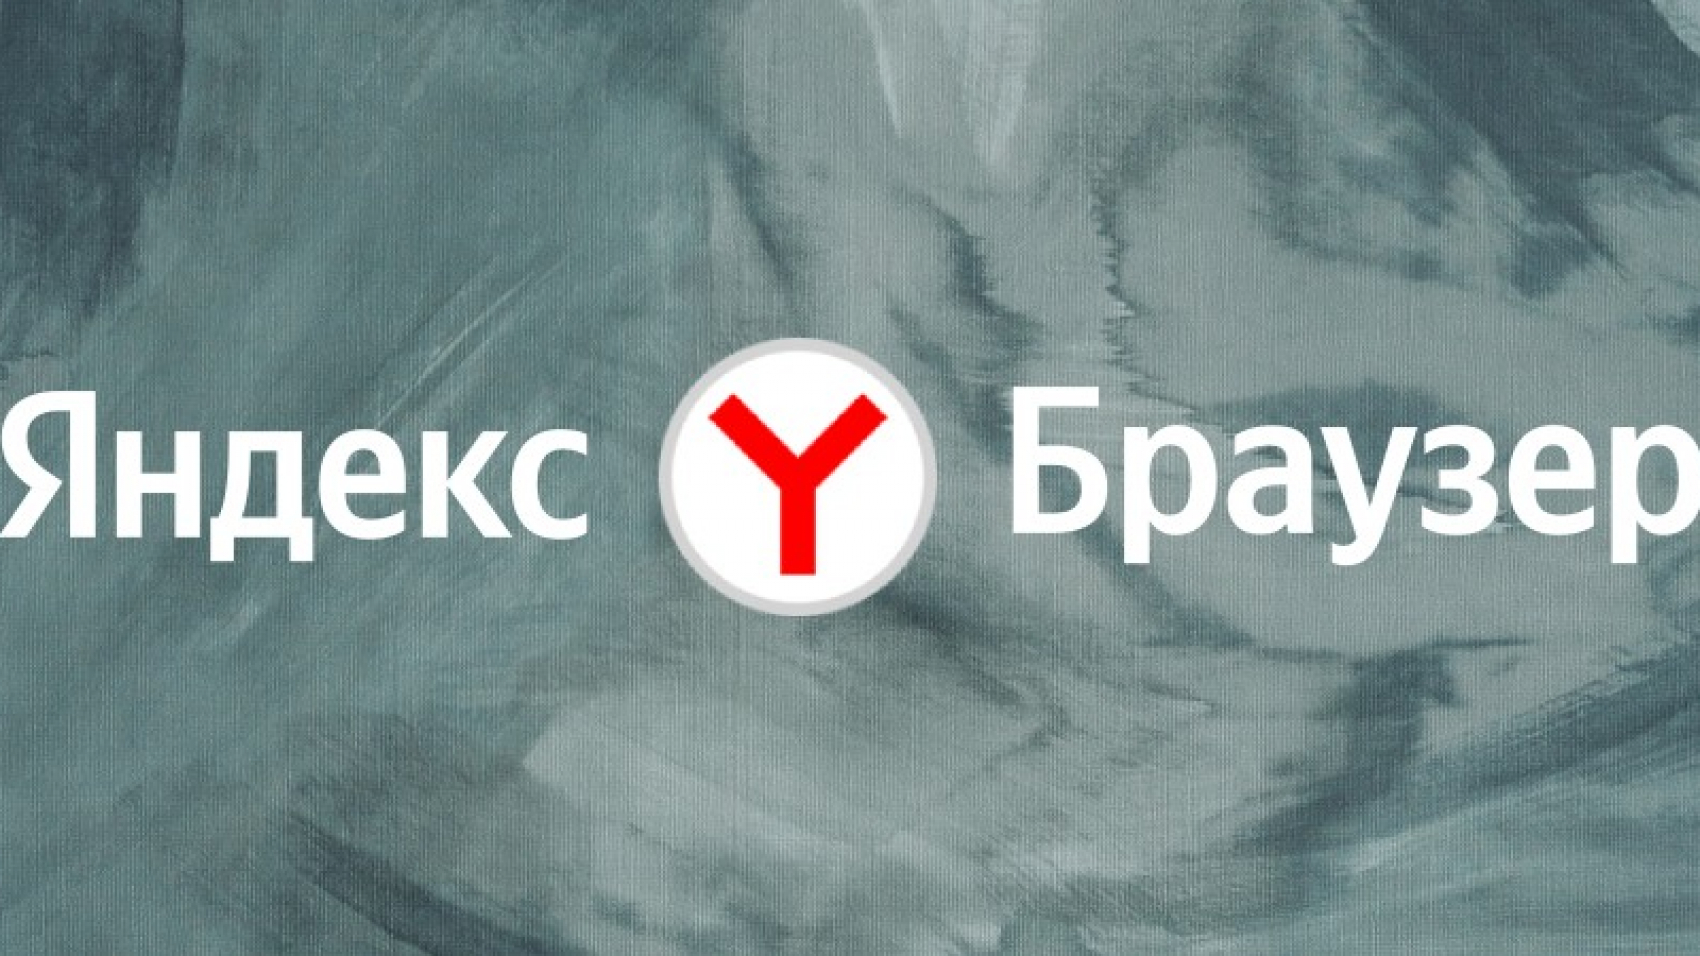 Вышел новый Яндекс.Браузер с переводчиком видео и вариантами дизайна